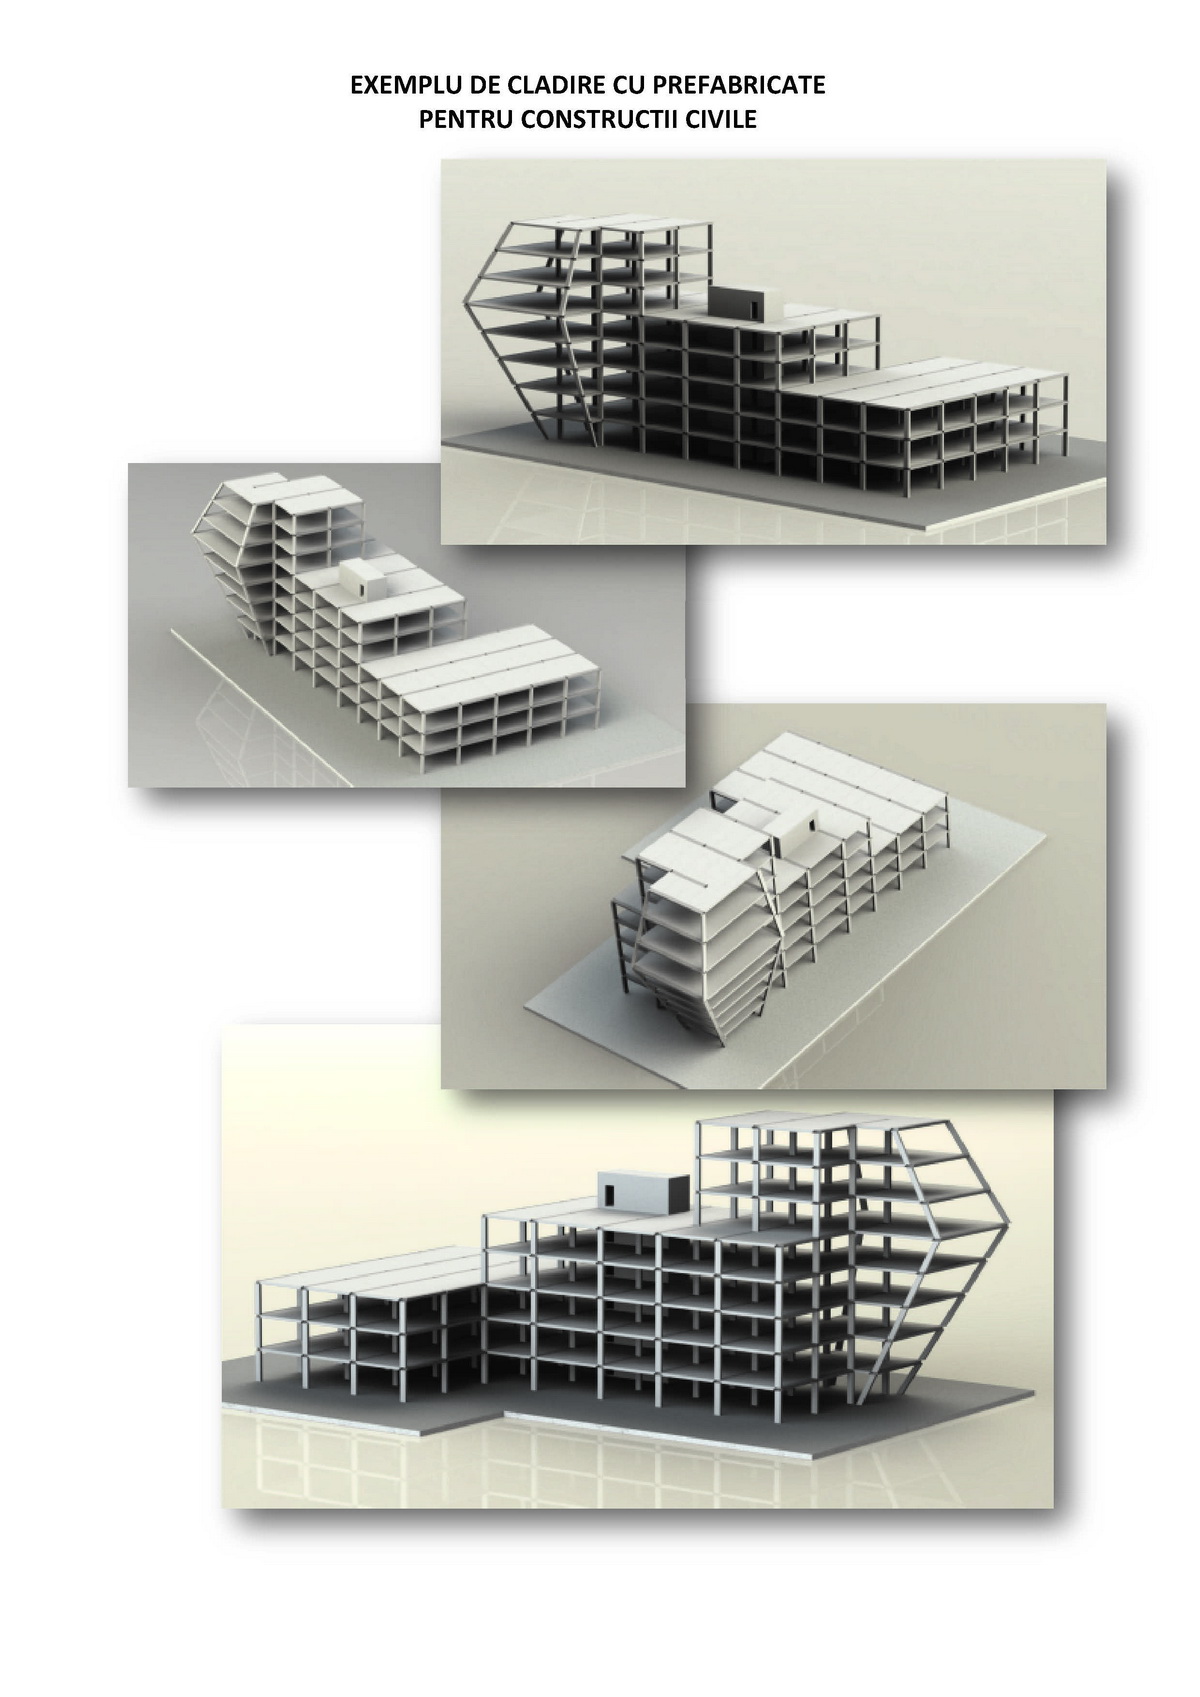 Exemplu de clădire cu  prefabricate pentru construcții civile